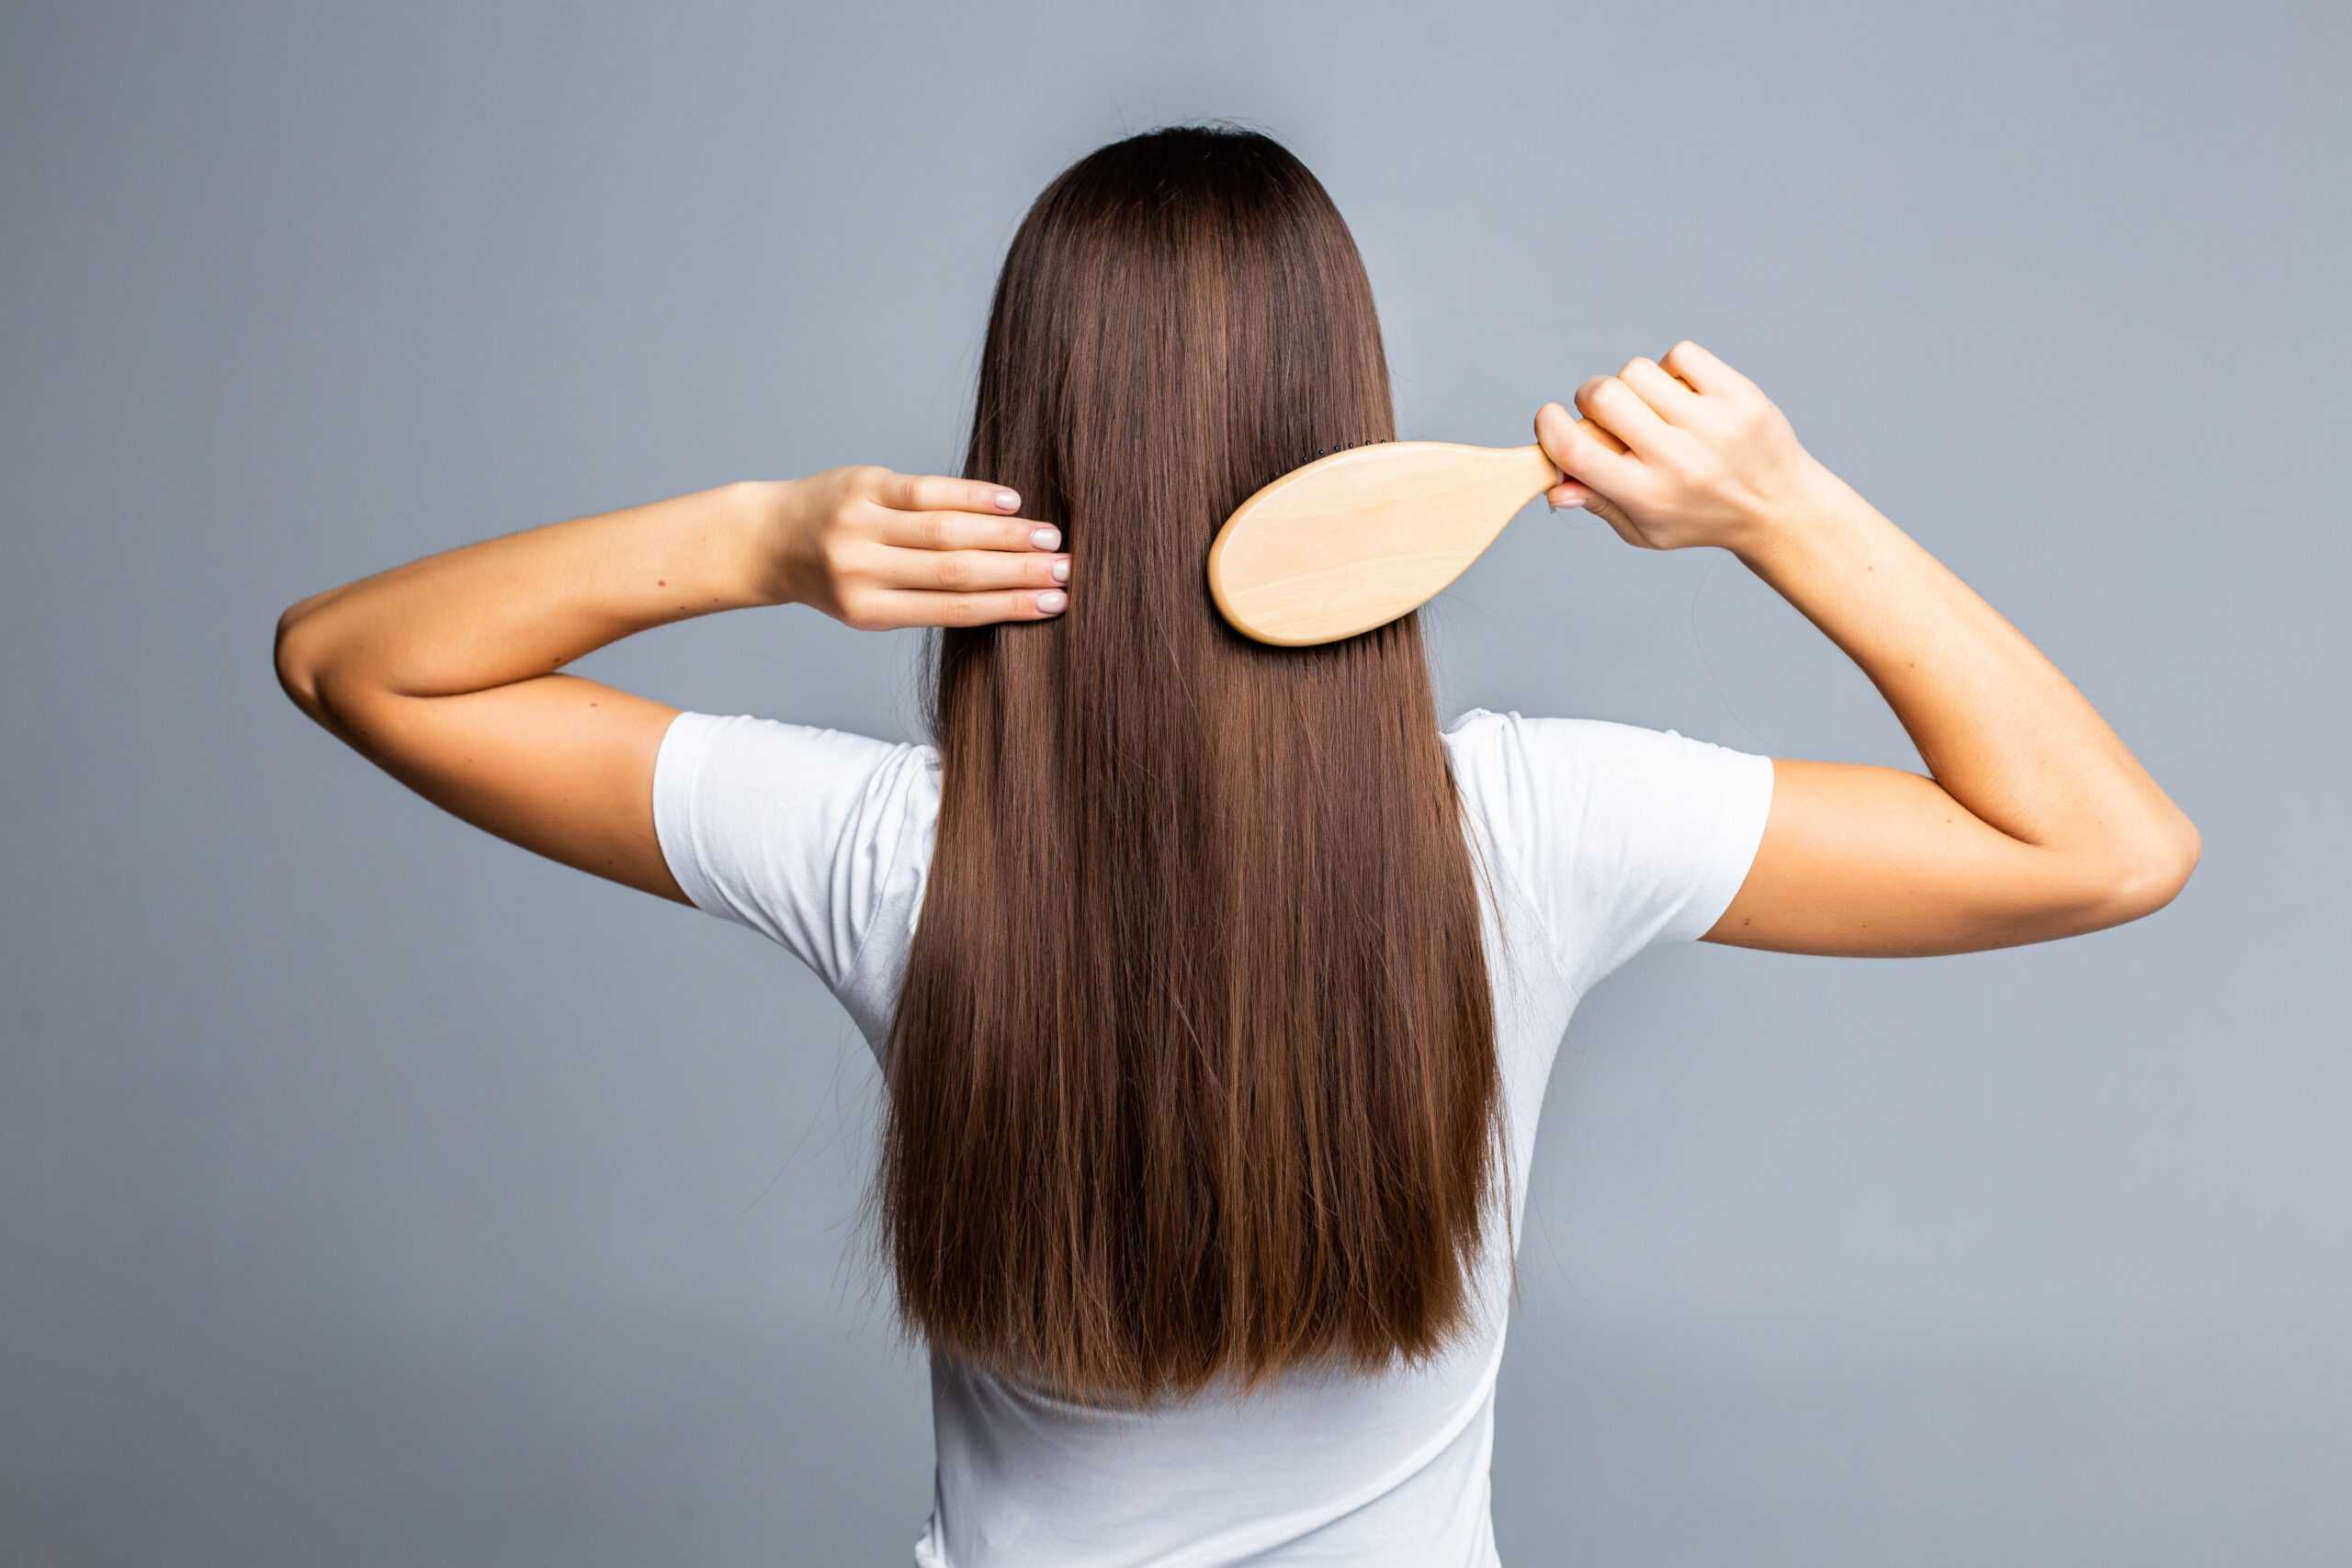 وصفات للحصول على شعر ناعم وقوى